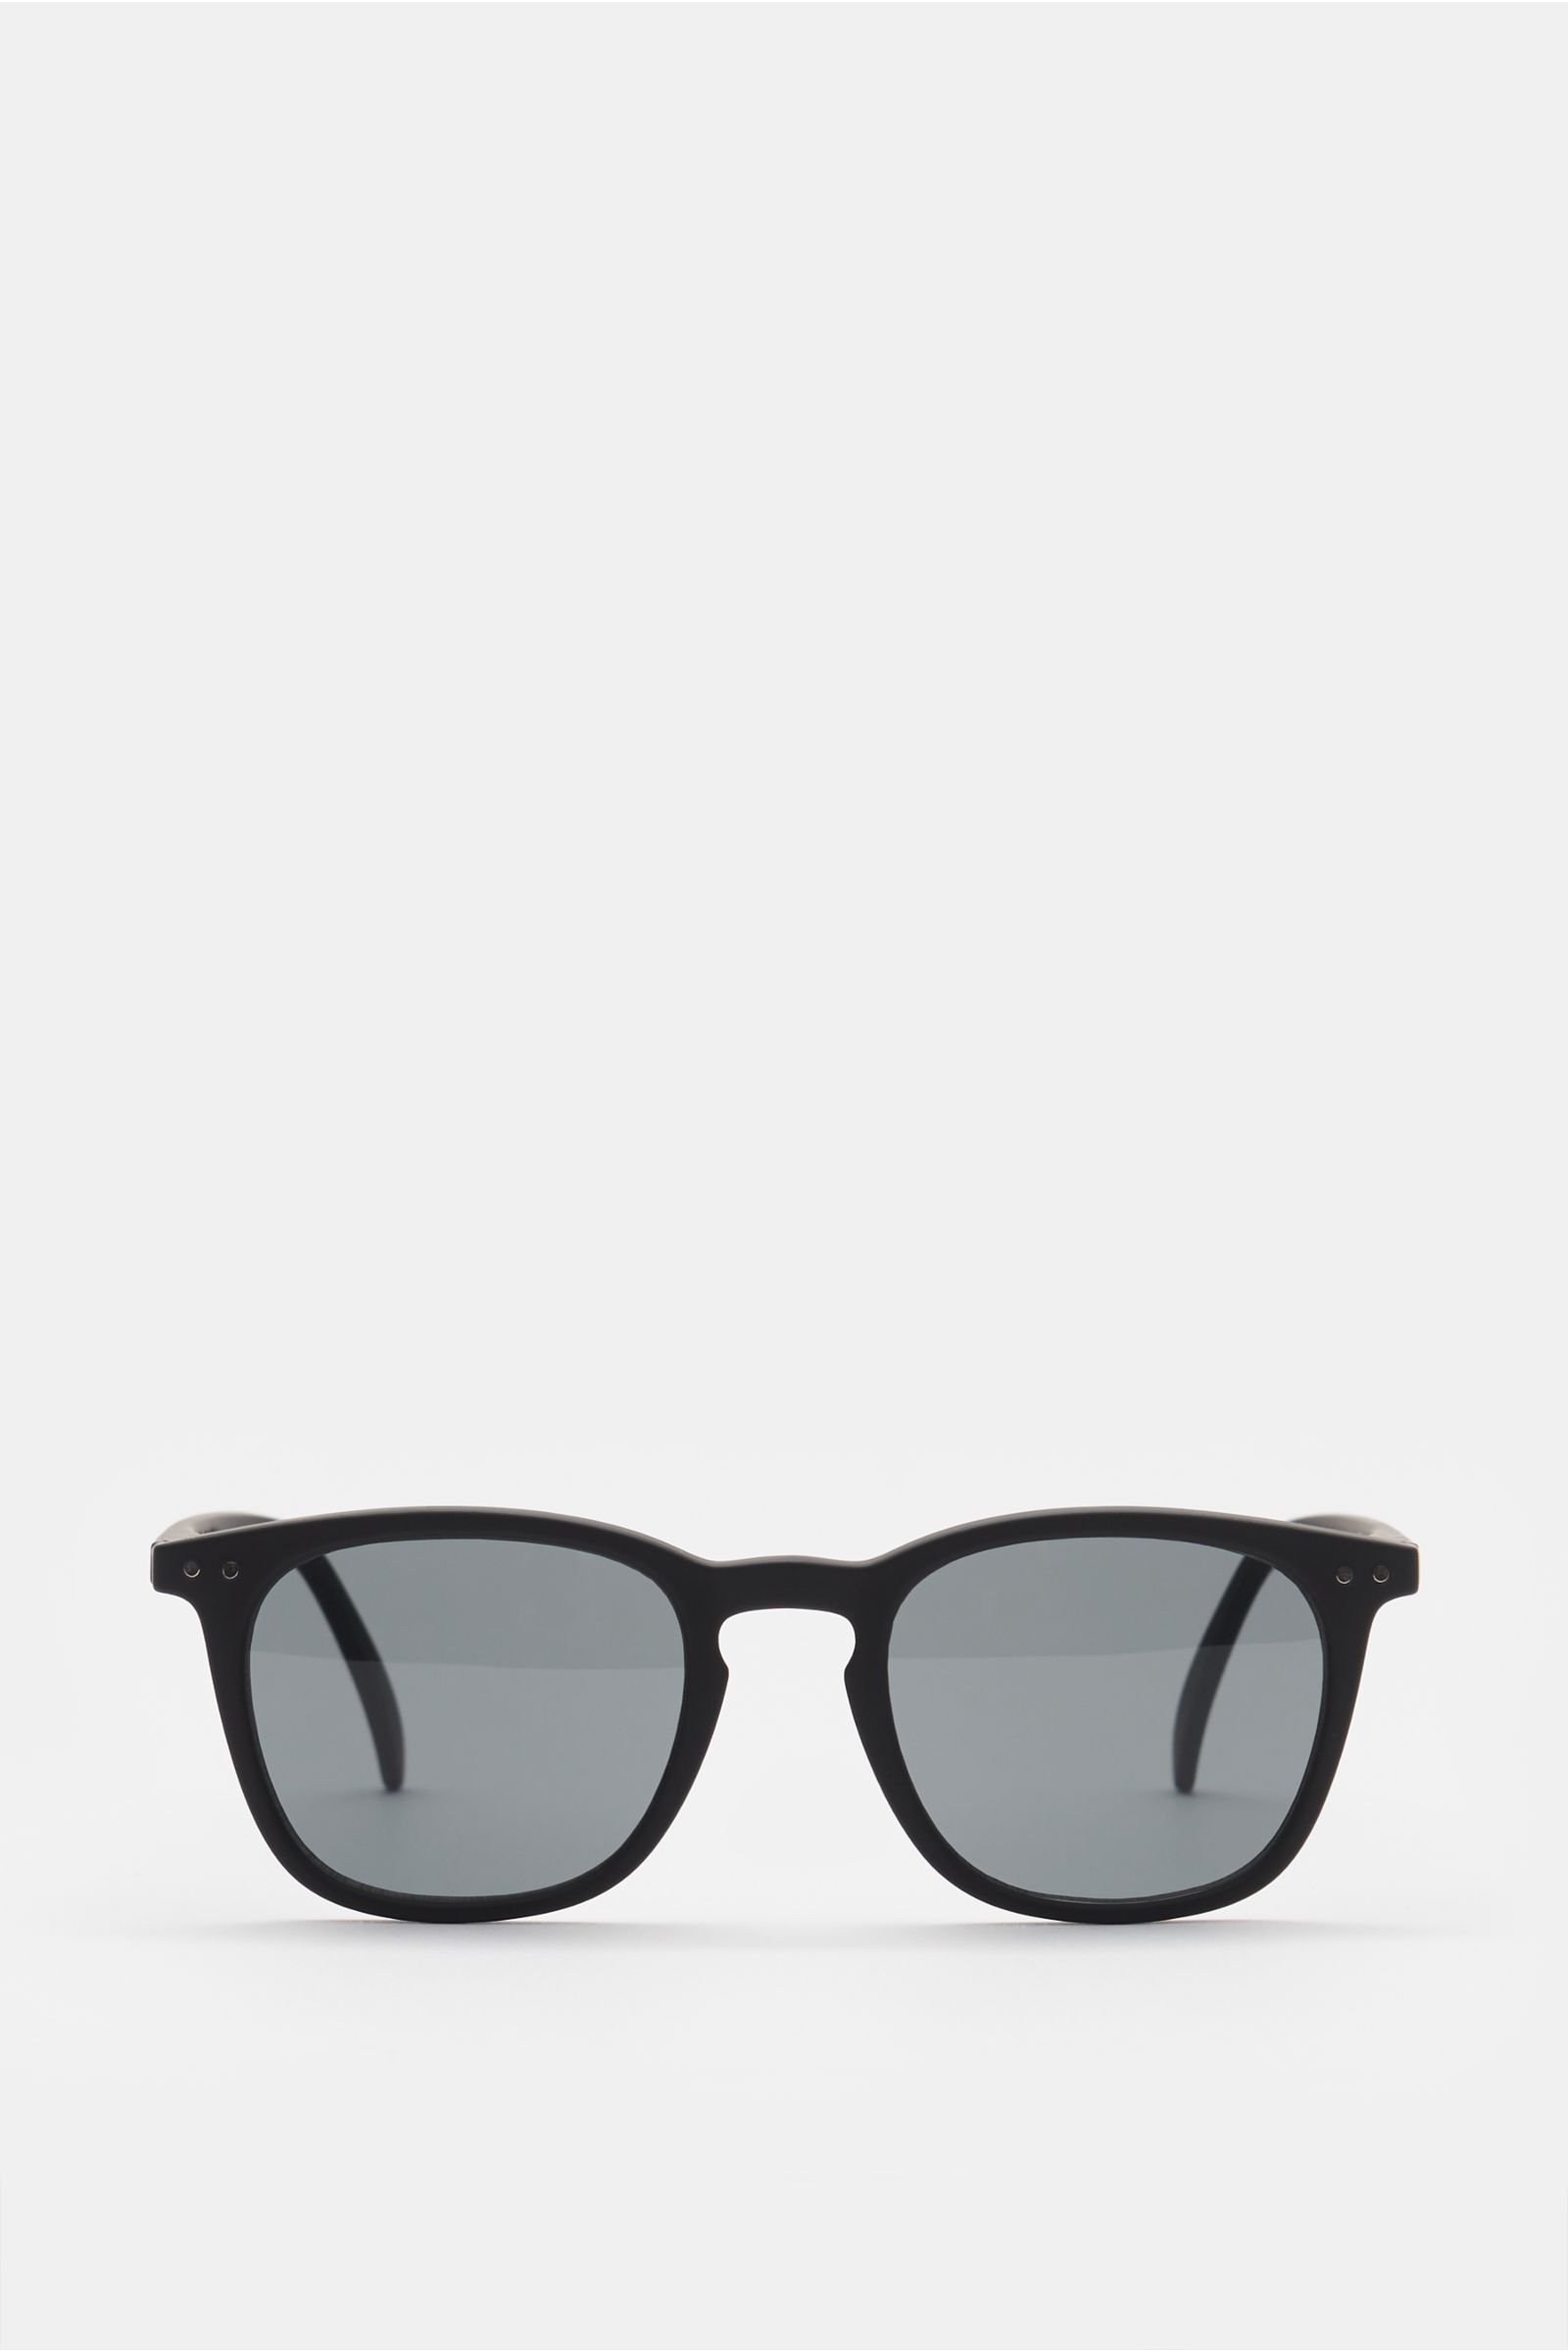 Sunglasses '#E Sun' black/grey